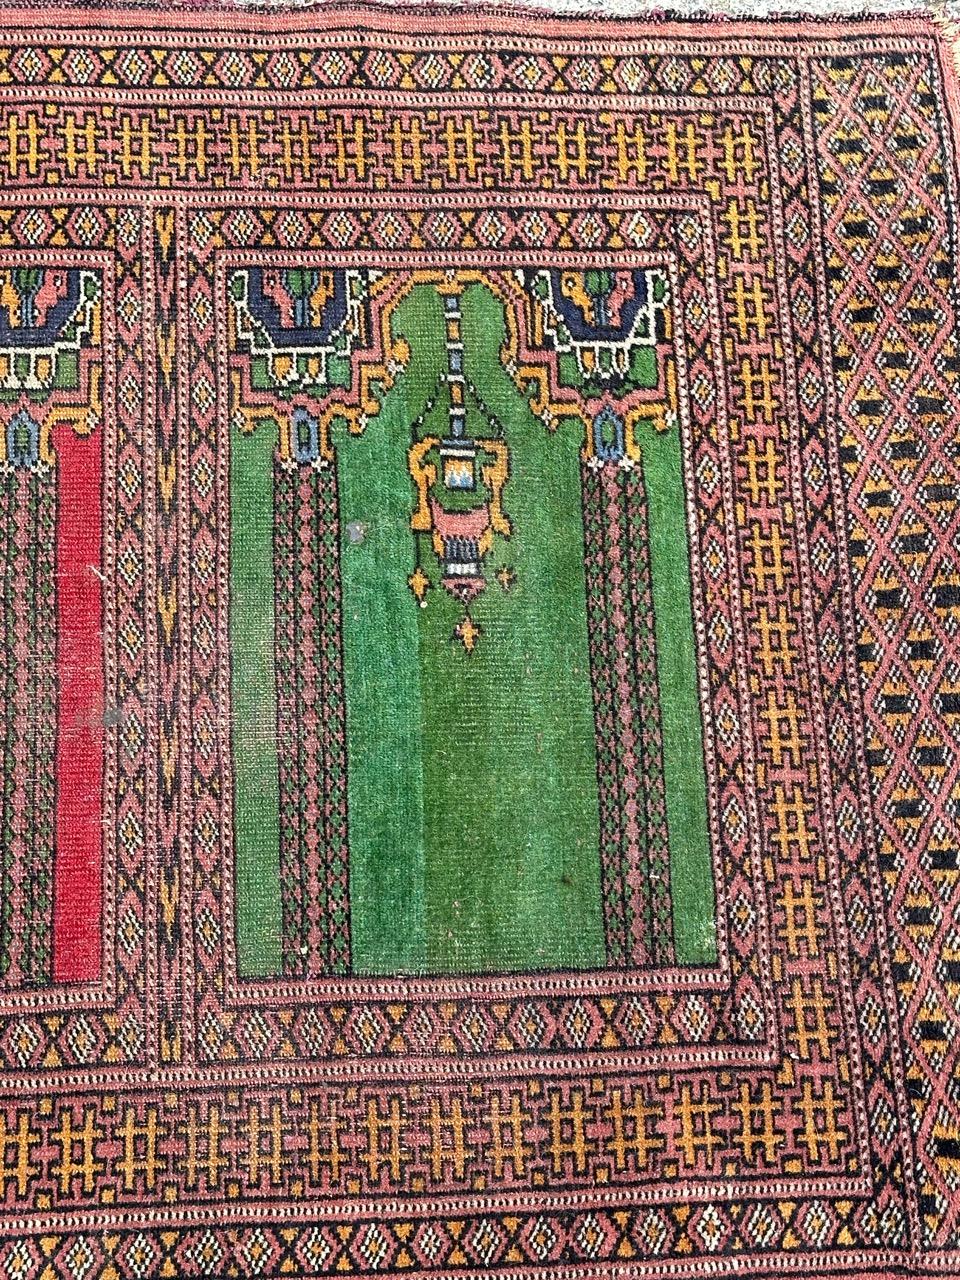 Joli tapis pakistanais vintage avec un design d'anciens tapis Saf/One et de belles couleurs avec du rouge, du vert, du bleu, du jaune, du rose et du noir, usures uniformes dues à l'utilisation, entièrement noué à la main avec de la laine sur une